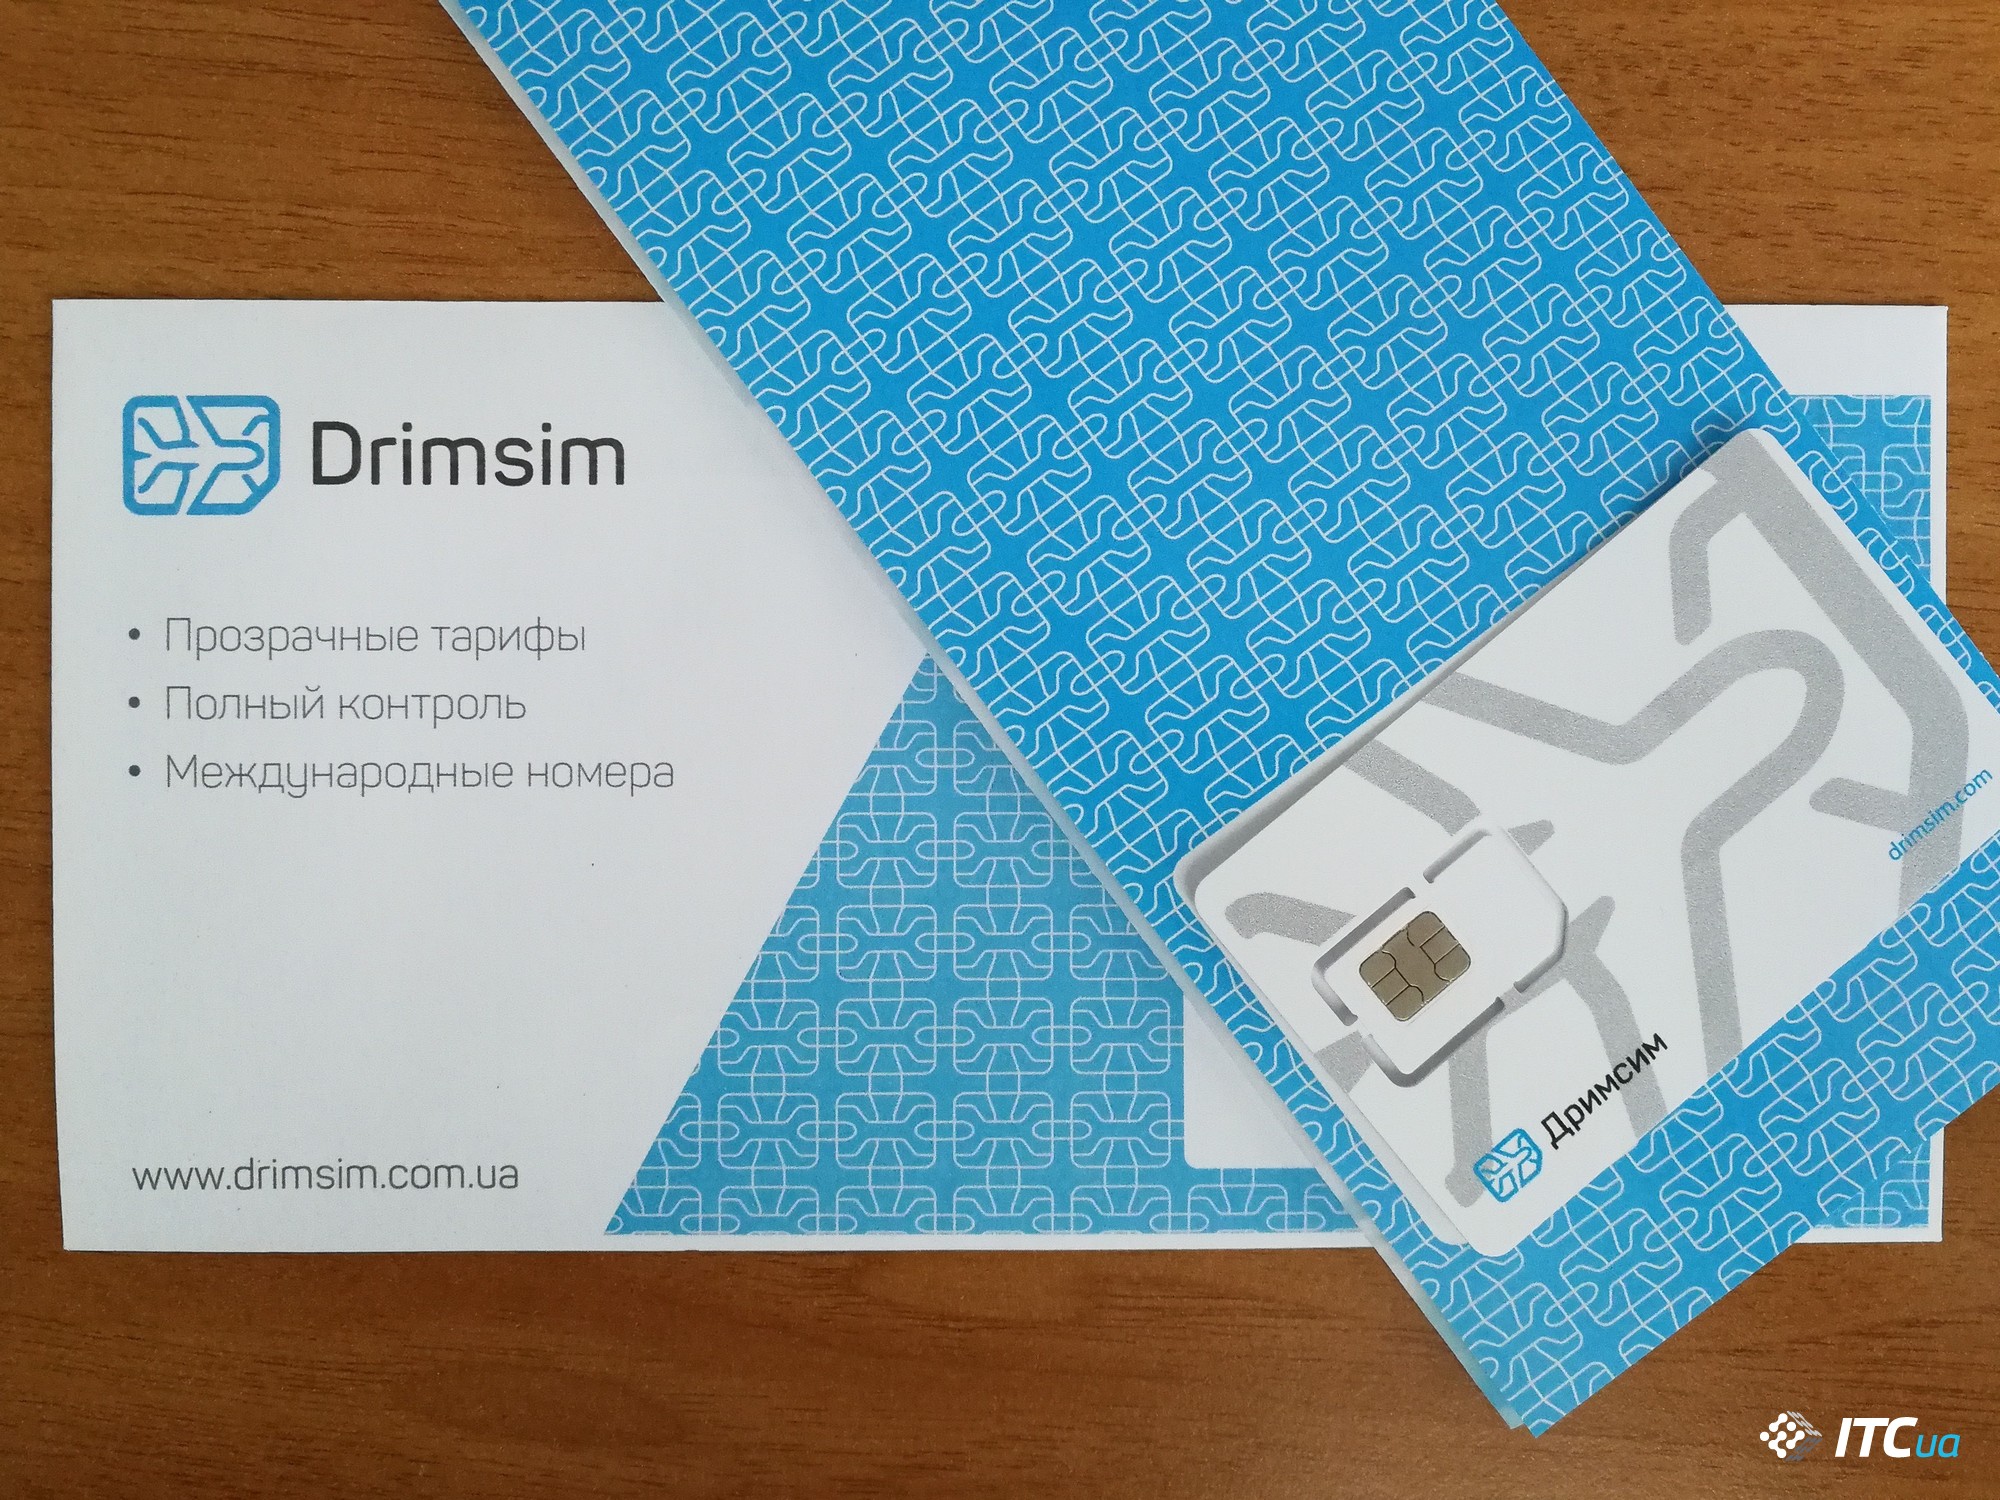 Drimsim в Украине: знакомство с новой travel-SIM